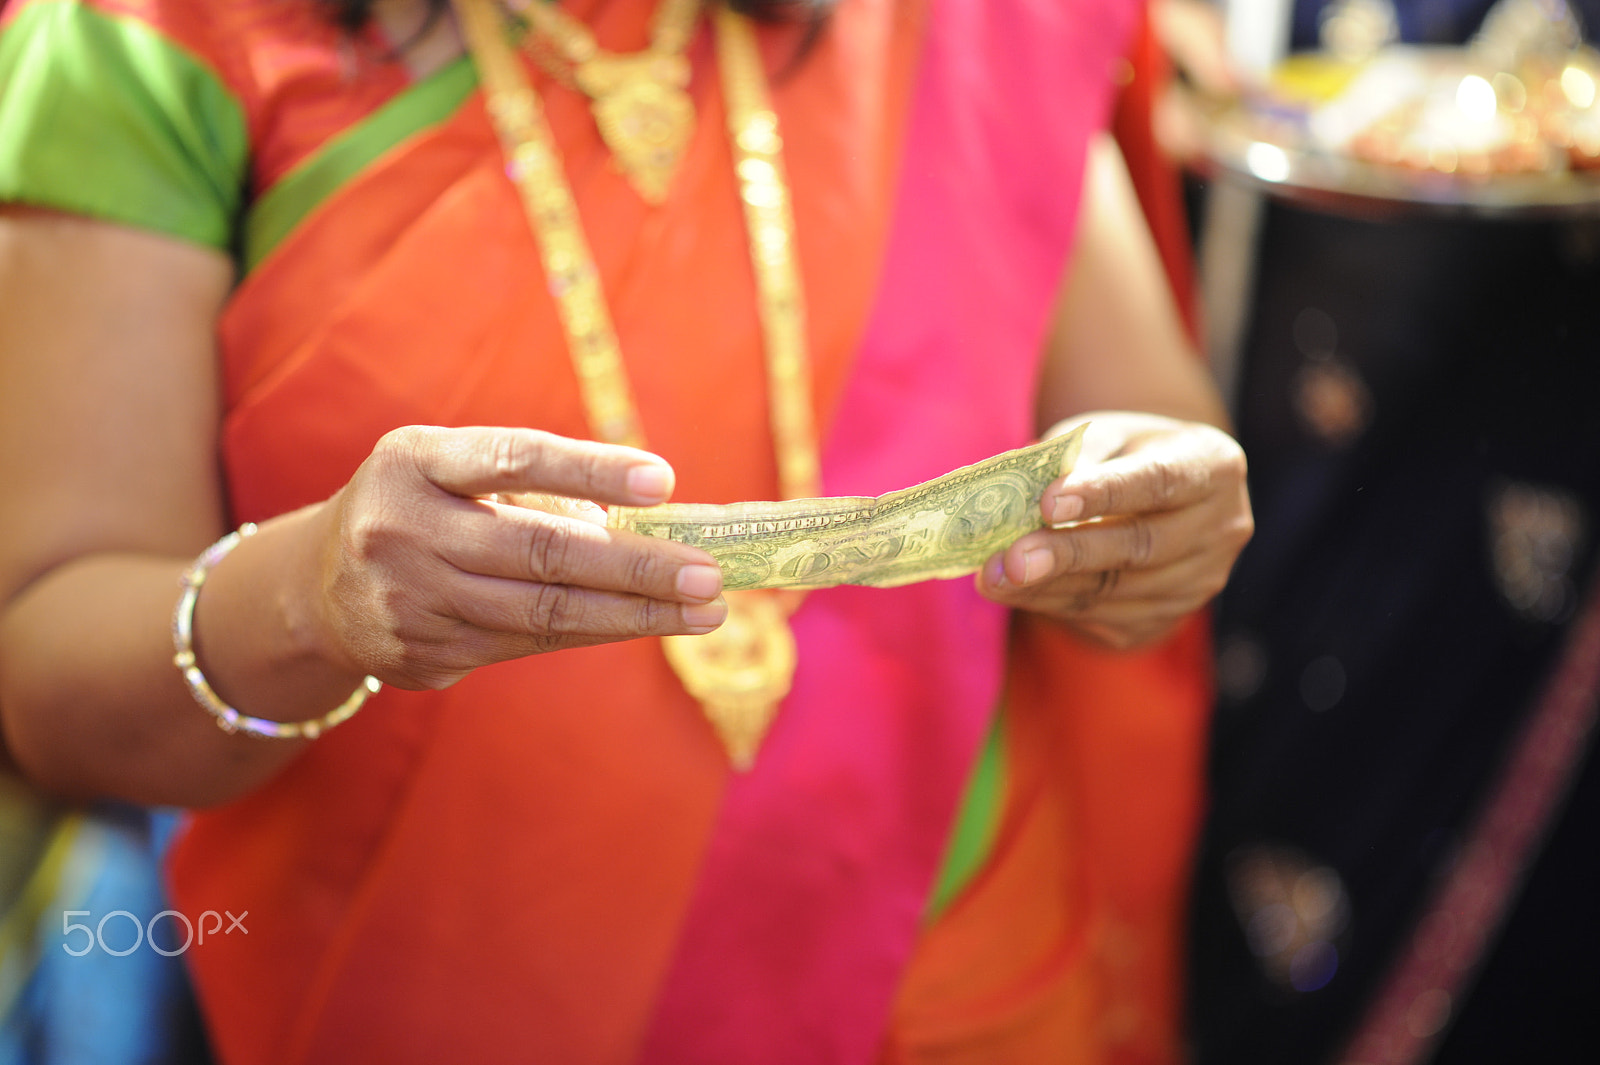 Nikon D3 sample photo. Indian wedding rituals photography